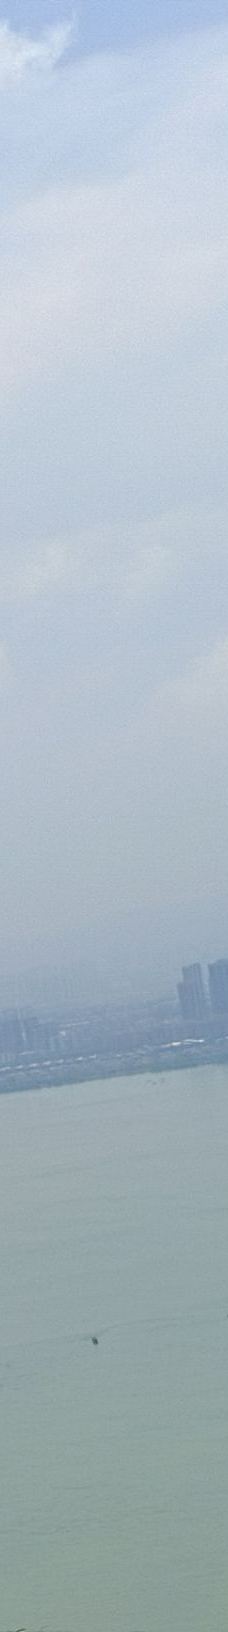 滇池西山索道-昆明-绿色的自由鸟